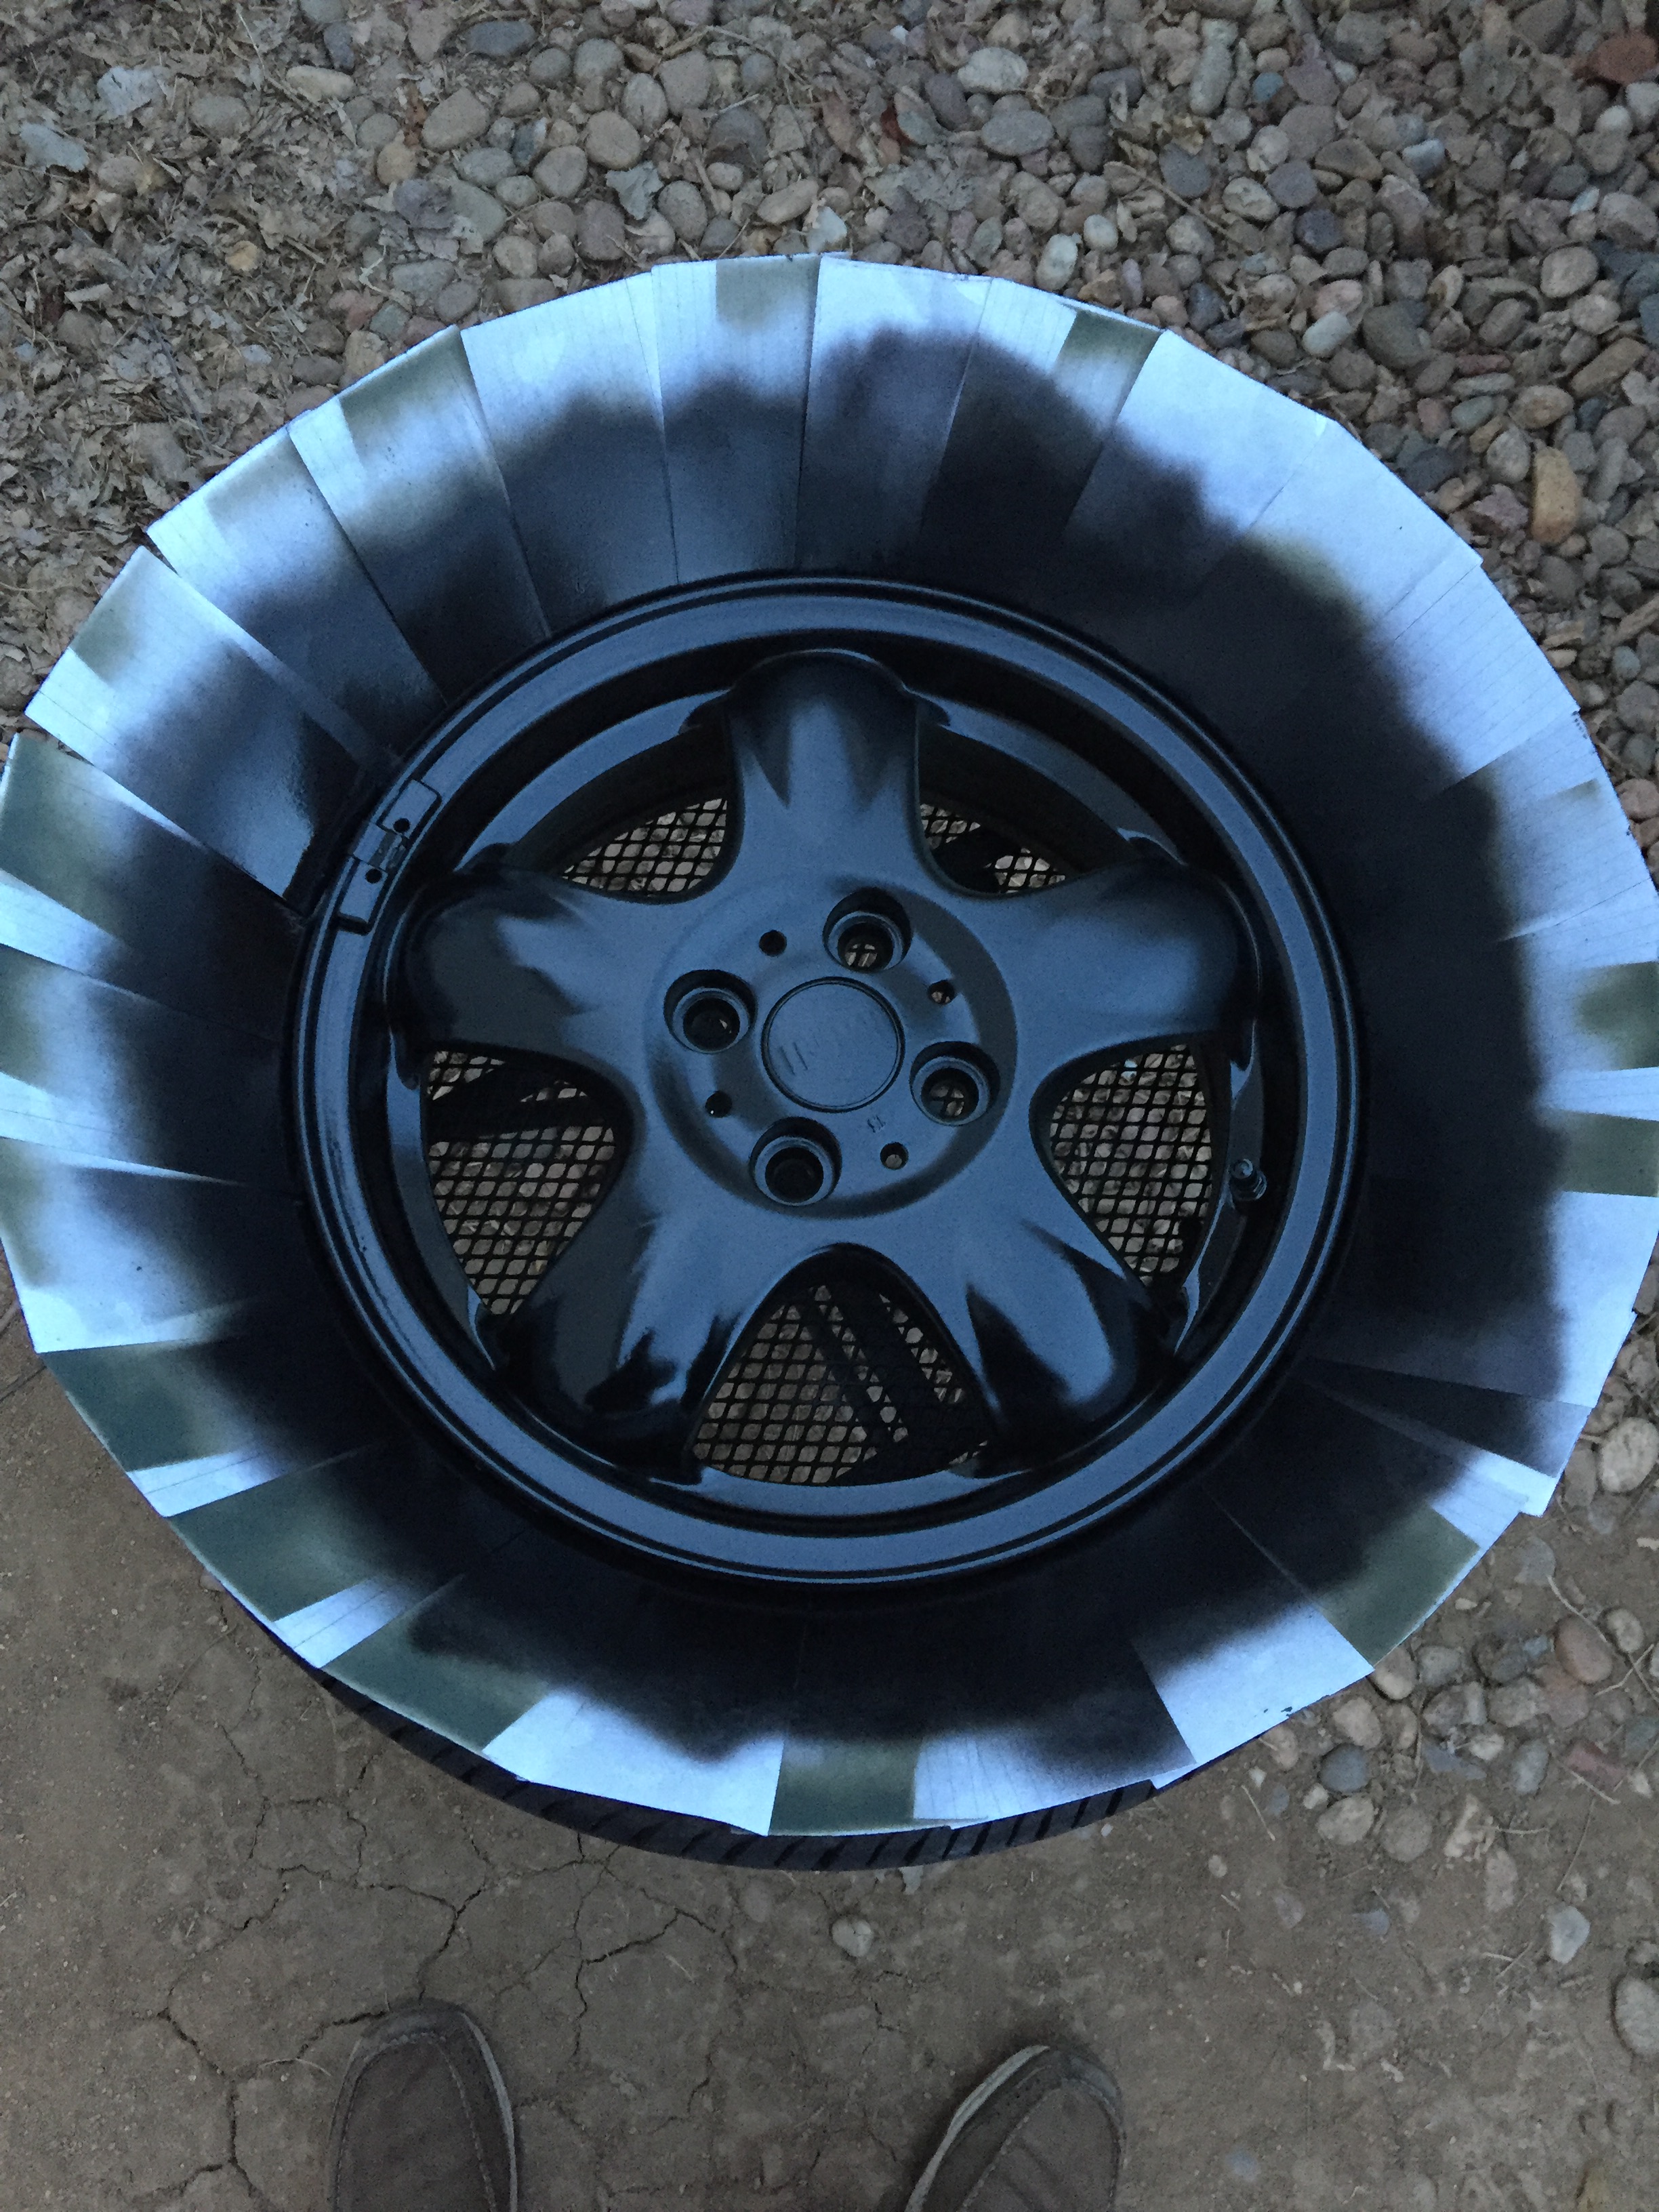 Painting OEM wheels North American Motoring